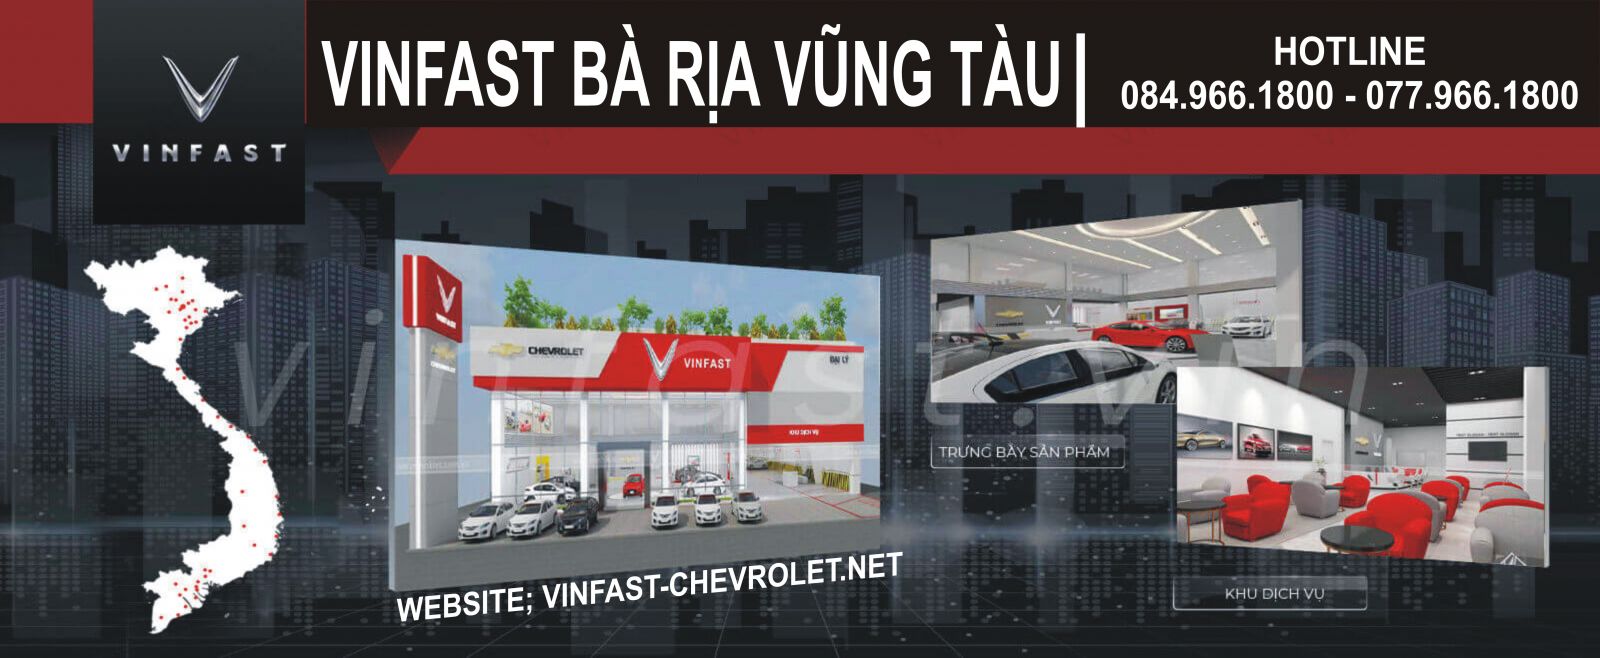 Mua bán xe VinFast Fadil ở Bà Rịa Vũng Tàu 032023  Bonbanhcom